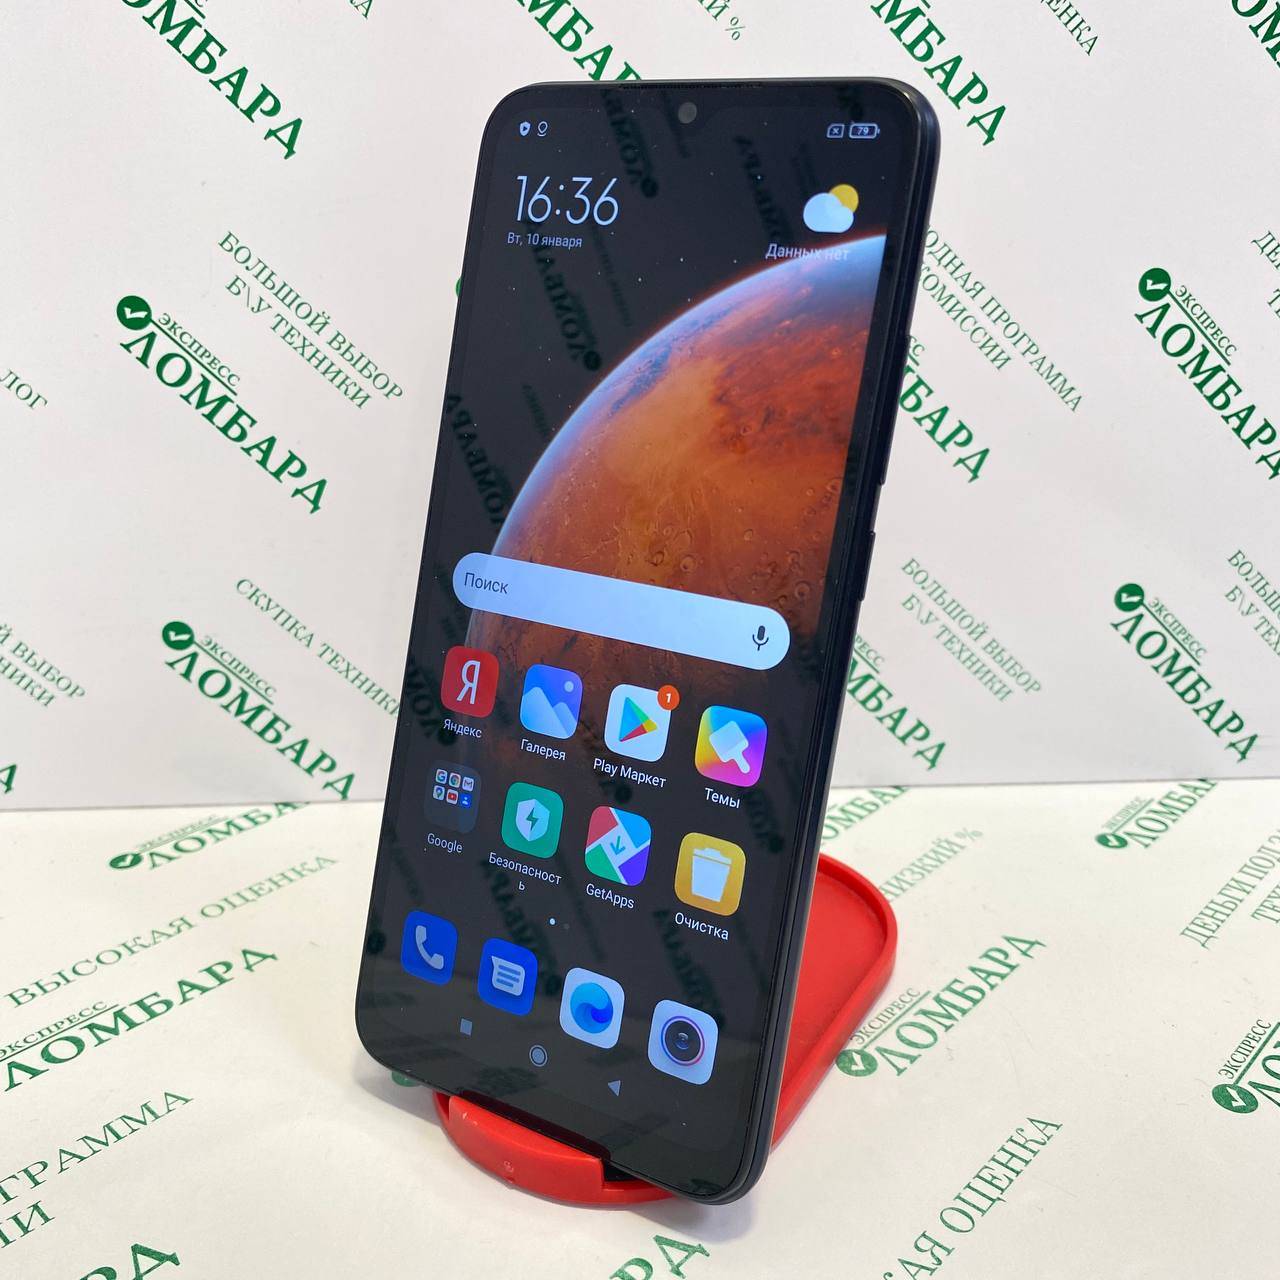 Обзор xiaomi redmi 4x — лучшего бюджетного смартфона по сочетанию цена-качество